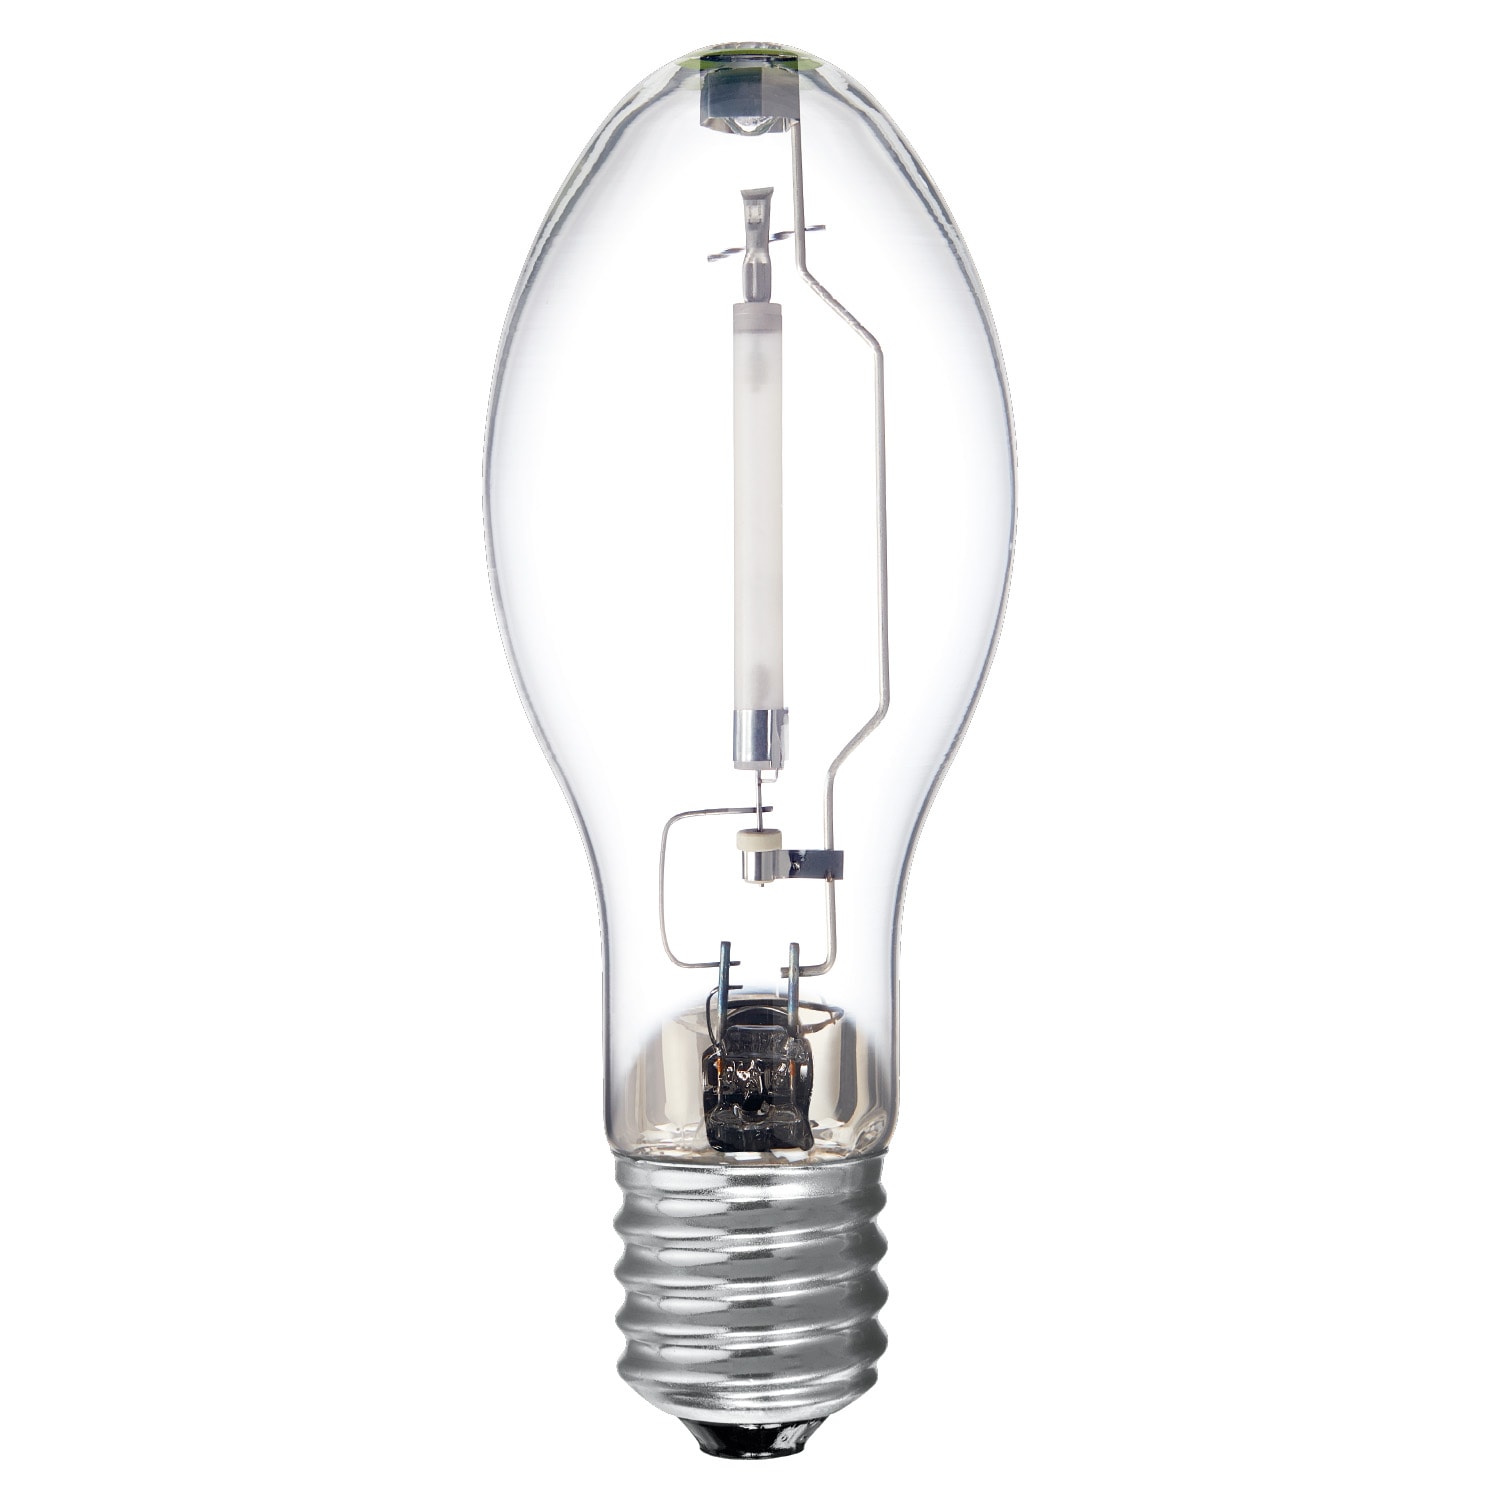 GE Lucalox Lu150/med 150 Watt Medium Base S55 High Pressure Sodium Lamp Bulb X6 for sale online 